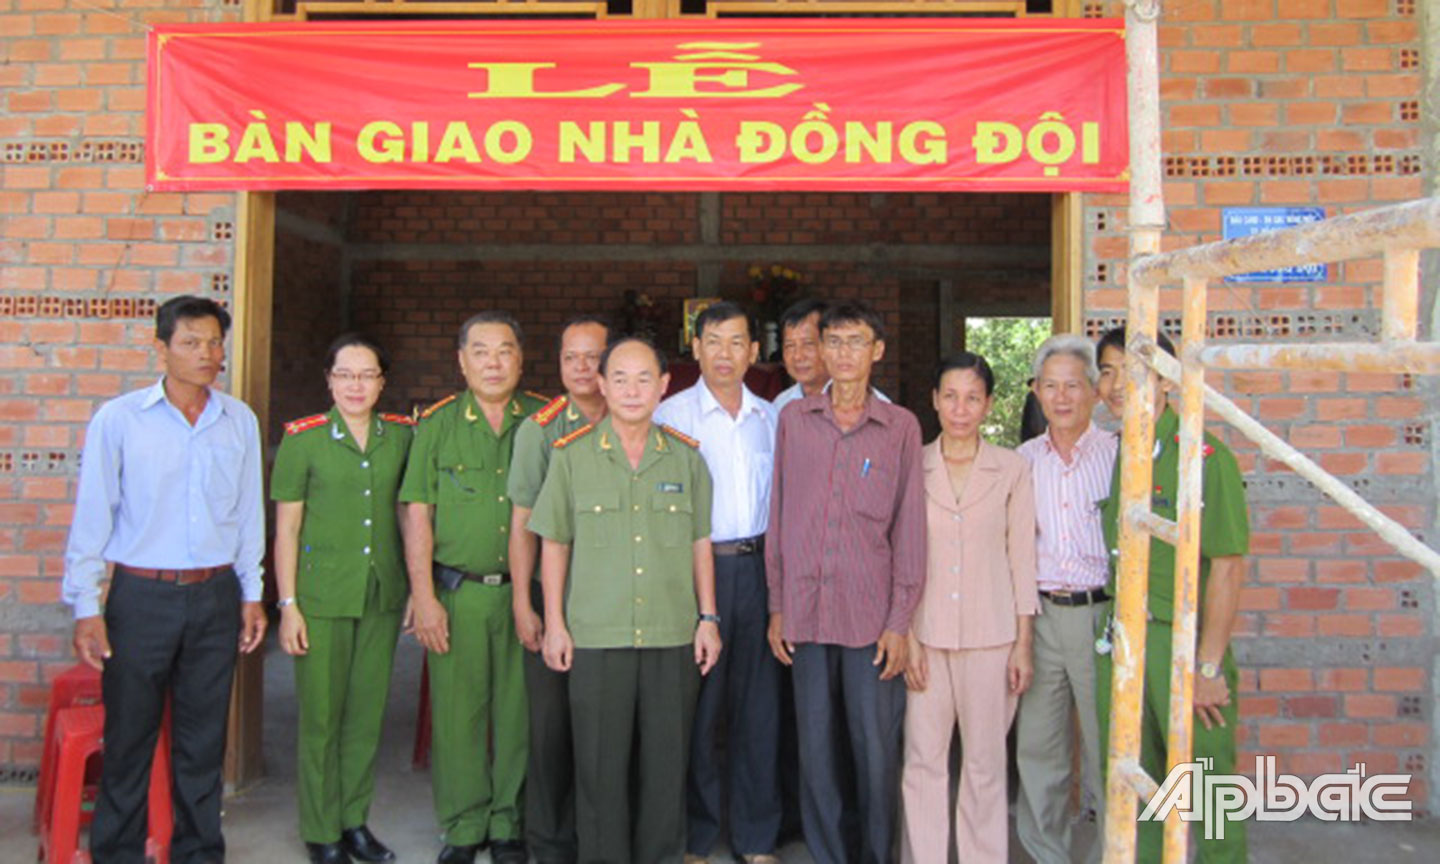  Bàn giao nhà “nghĩa tình đồng đội”  cho CCB Nguyễn Hoàng Khương ở xã Hưng Thạnh.